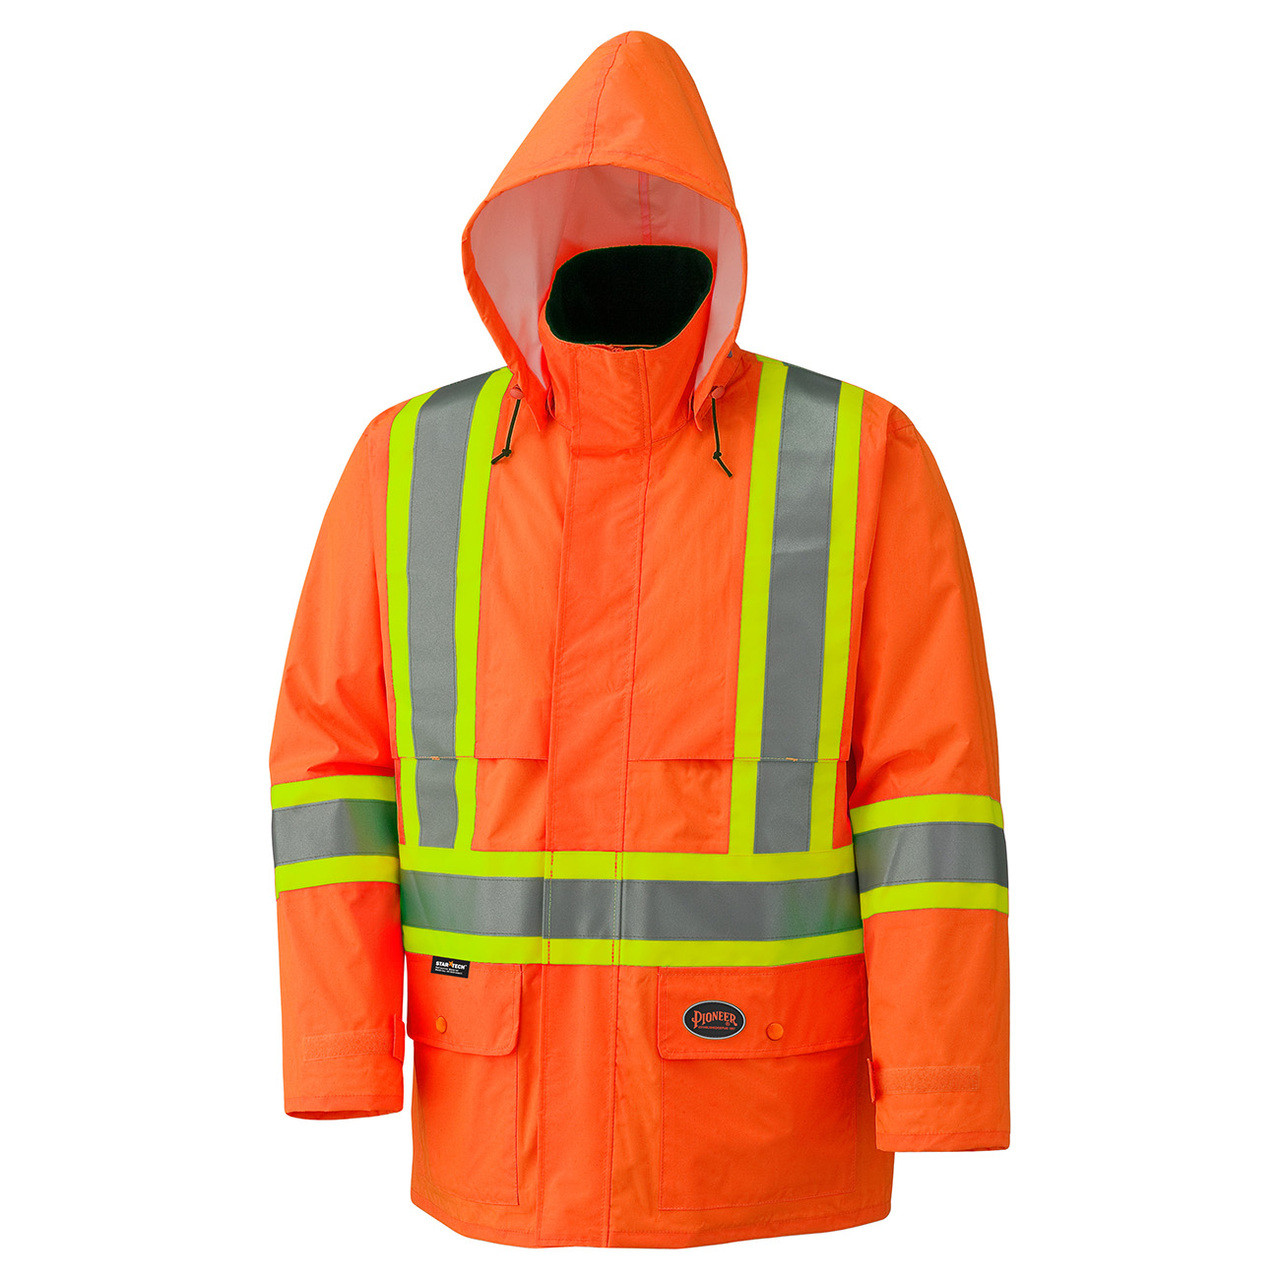 Orange Hi-Viz 150D Lightweight Safety Jacket with Detachable Hood